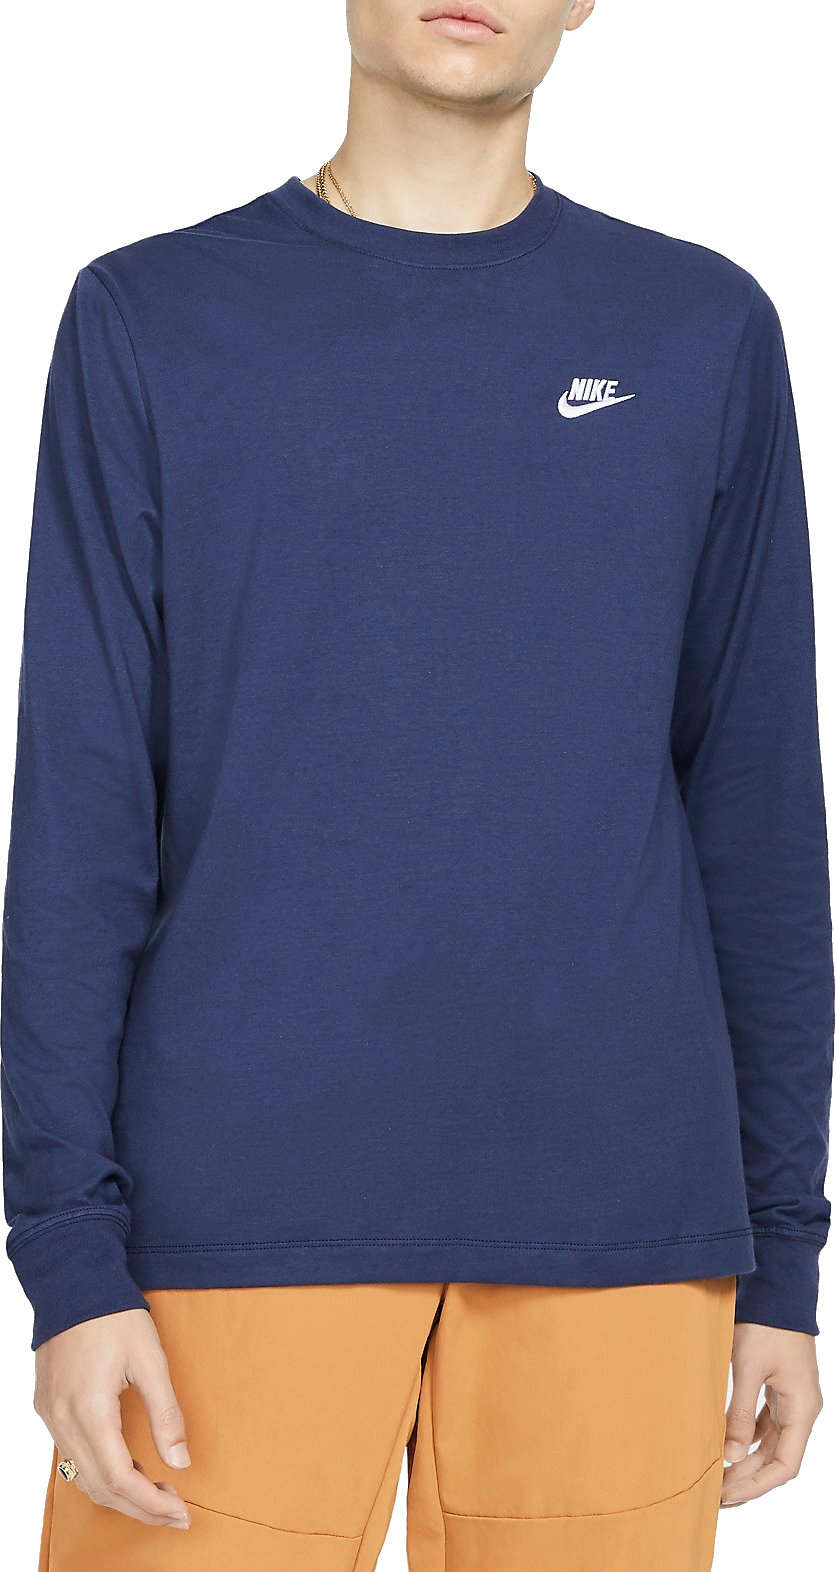 Pitkähihainen t-paita Nike Sportswear